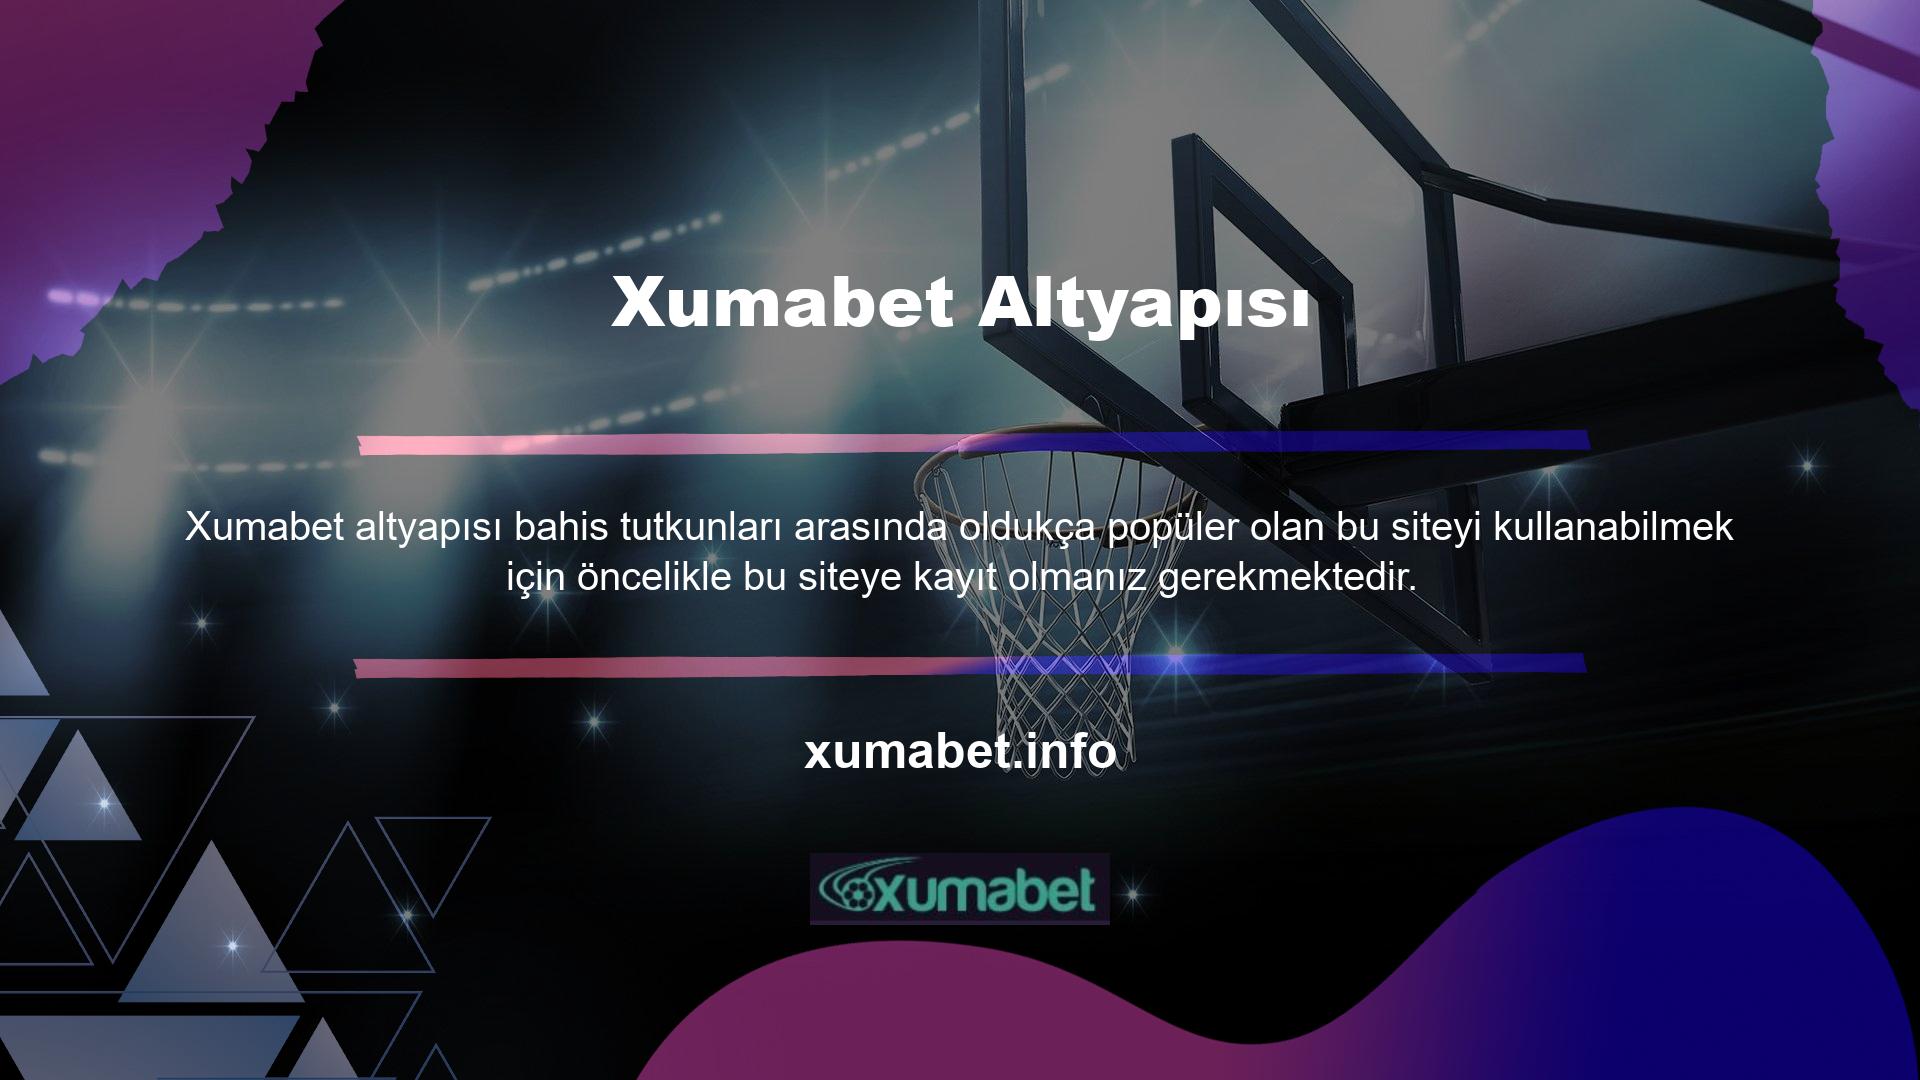 Xumabet altyapısı oldukça güvenilir olduğundan siteyi kullanırken herhangi bir sorunla karşılaşmazsınız